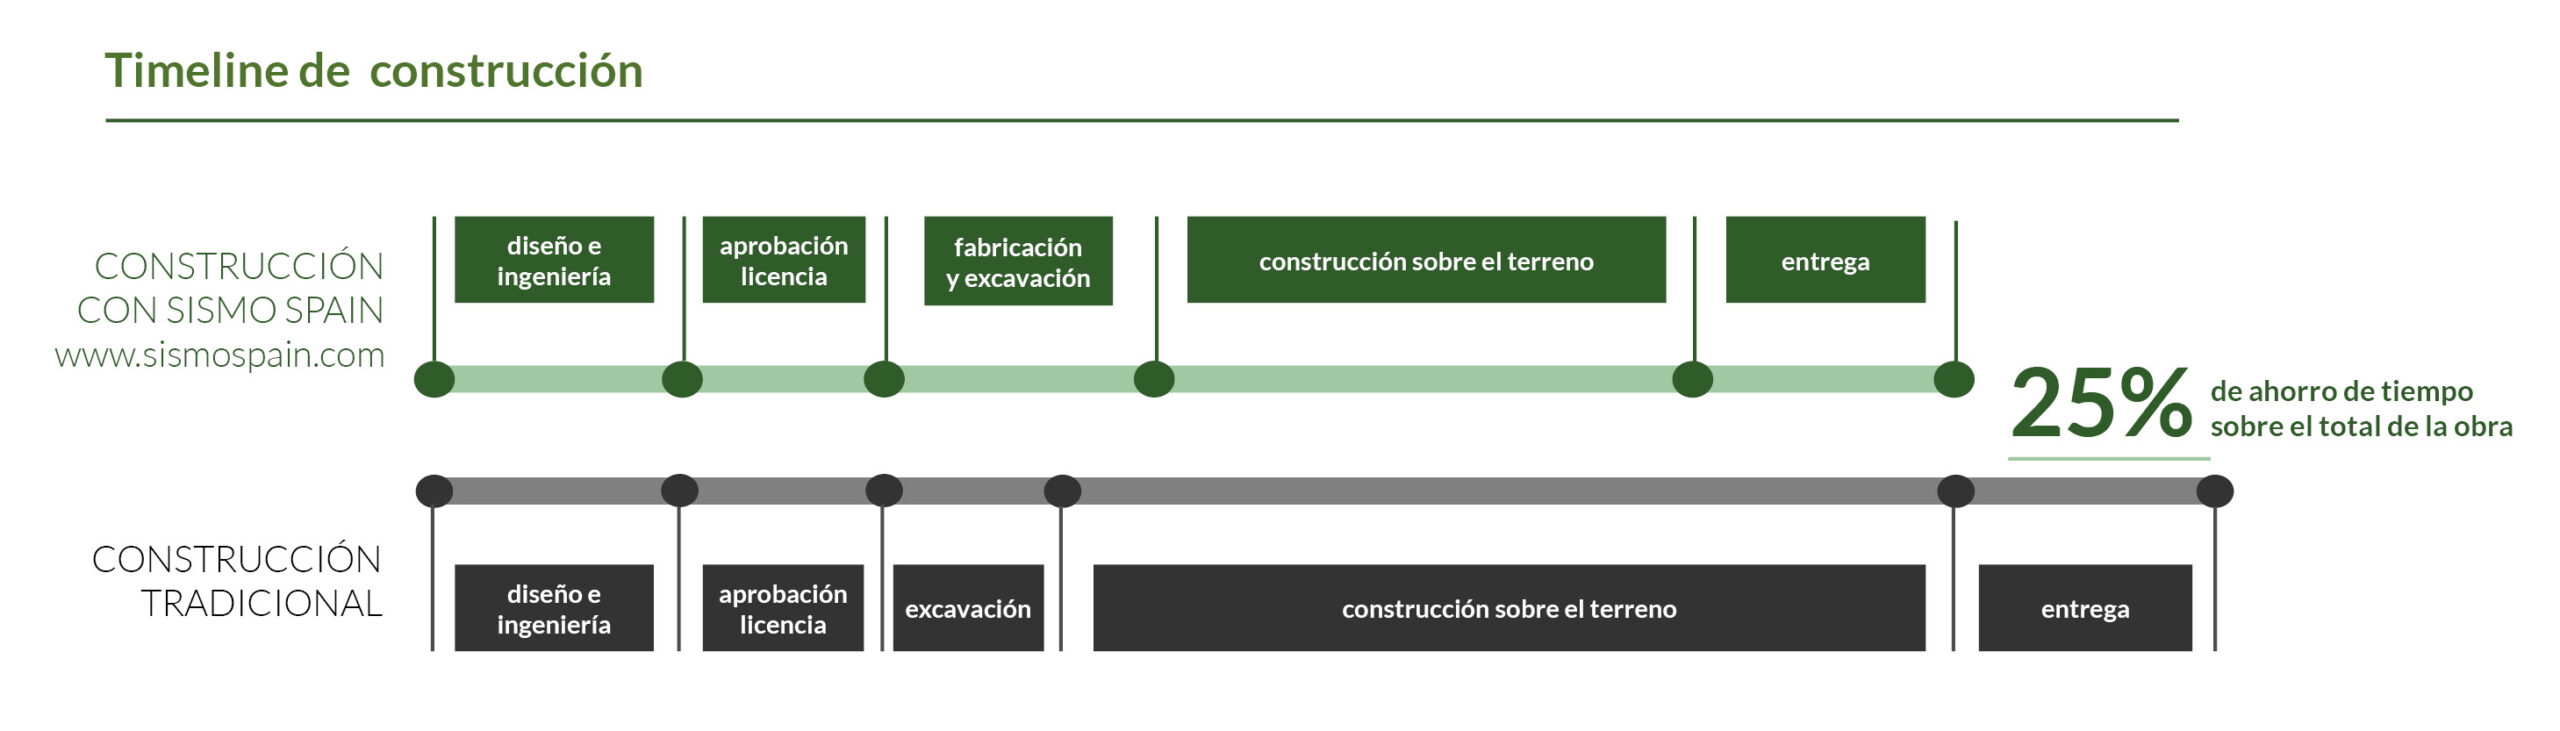 timeline de construcción industrializada